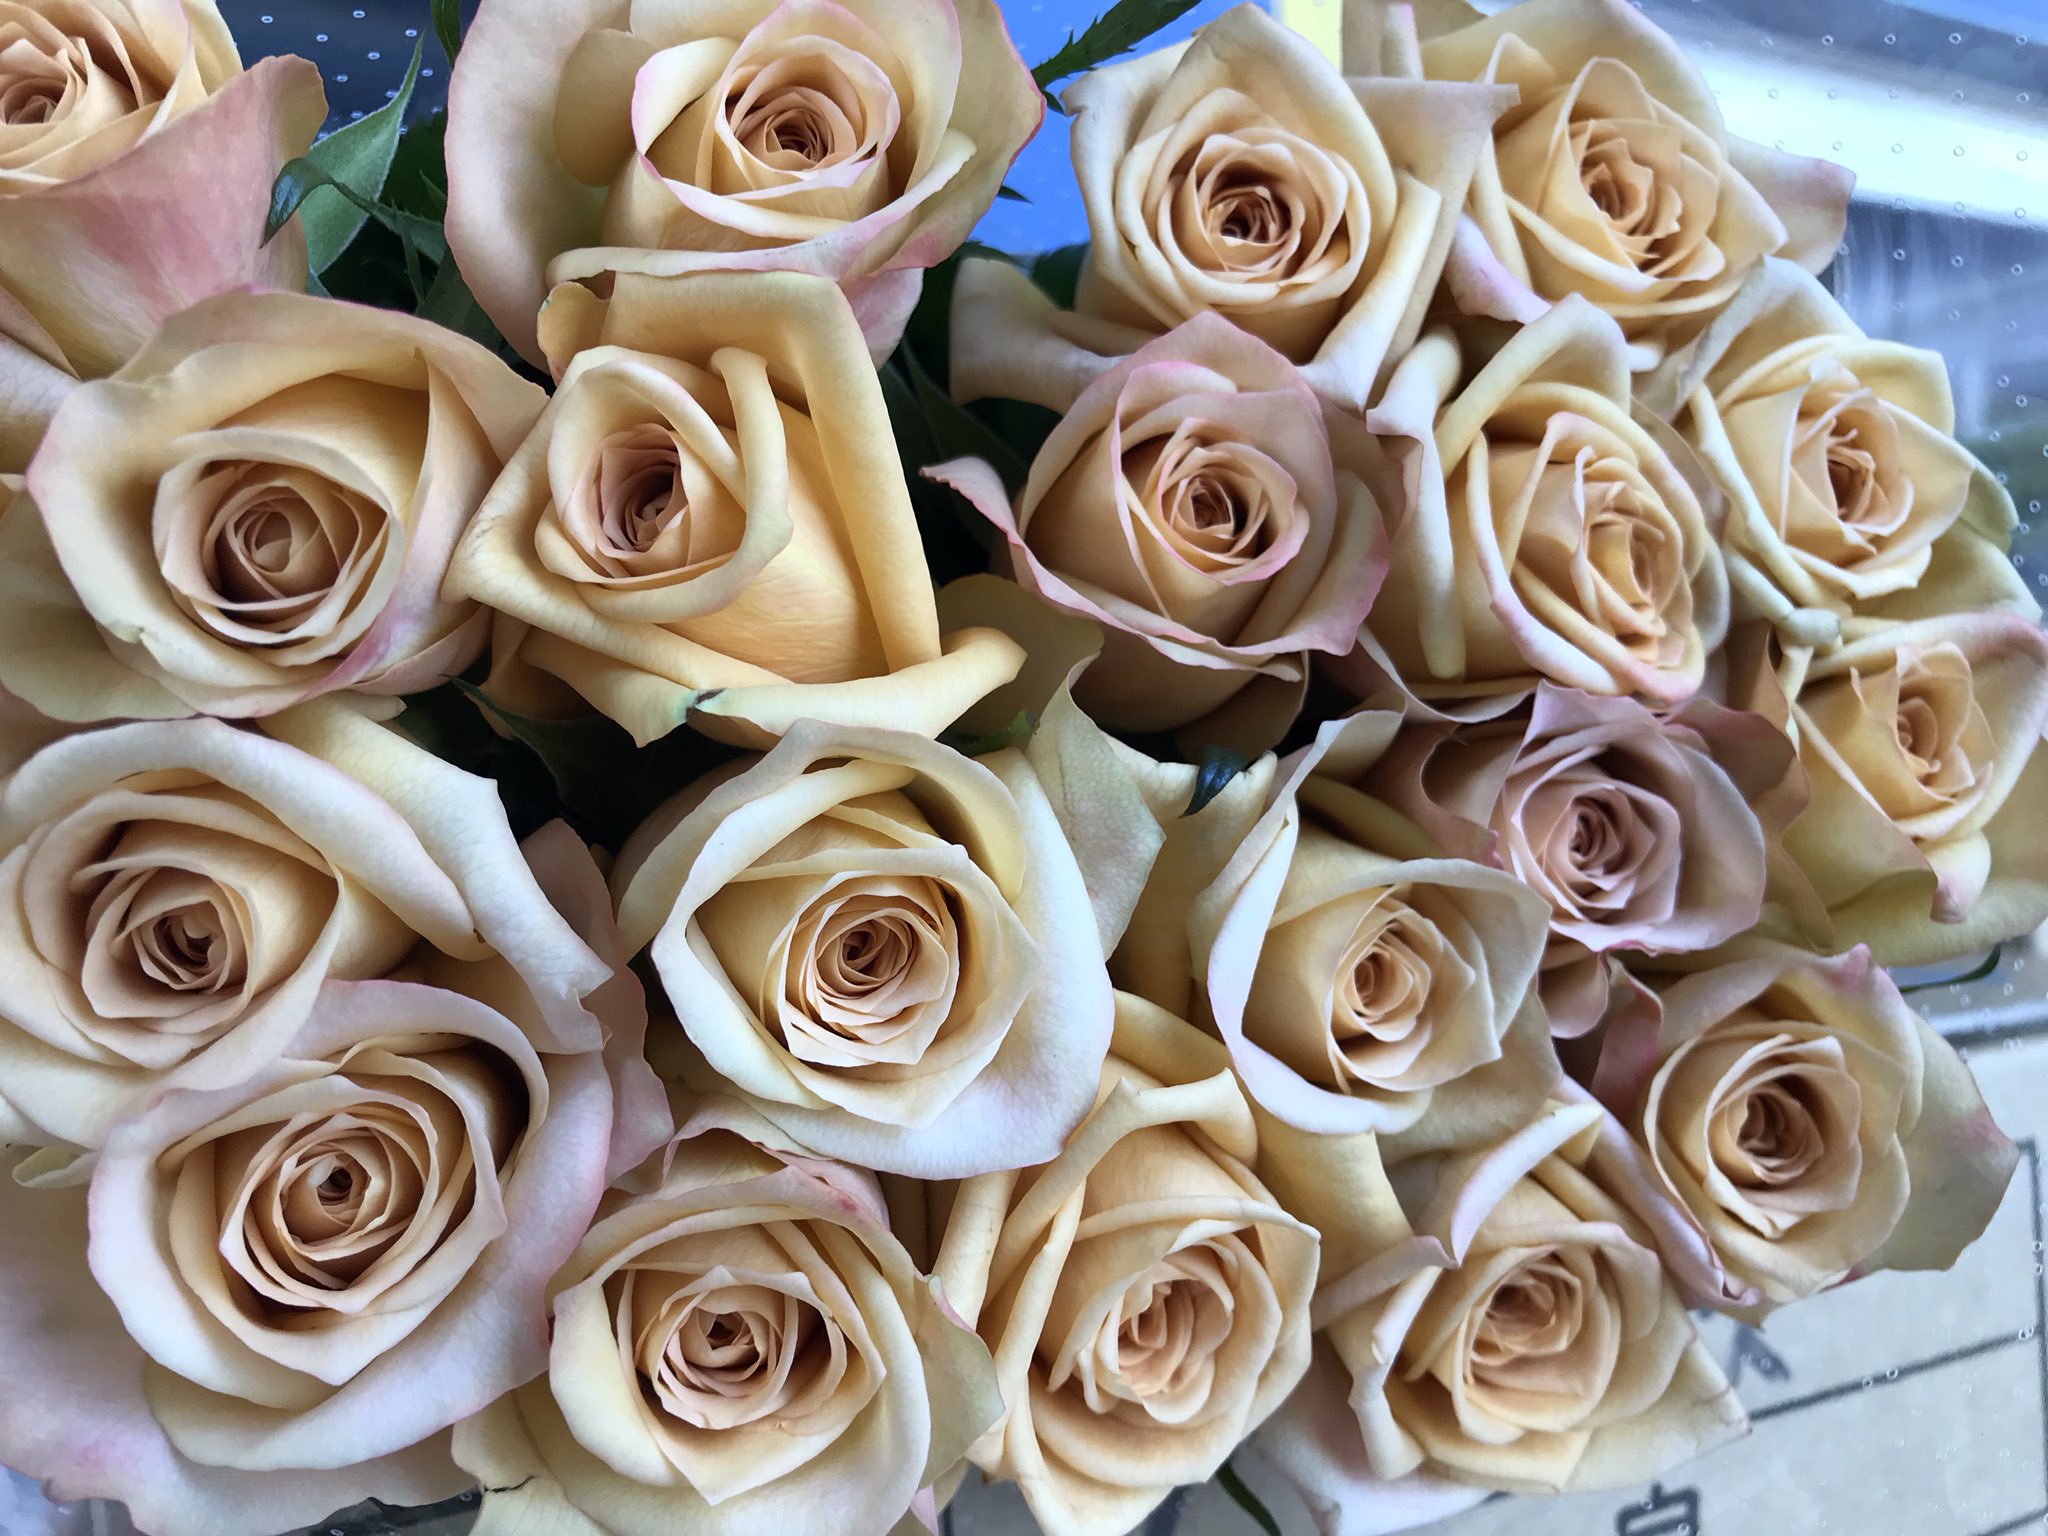 花と葉っぱの店 プント 久し振りの購入 かなり個性的な色のバラ カネラ こちらも出番がなかなか難しいバラ ライラッククラッシック スプレータイプのミニバラ ラディッシュ パステルなかわいい花が 少ないです イマハナ T Co W69n0j0b7b